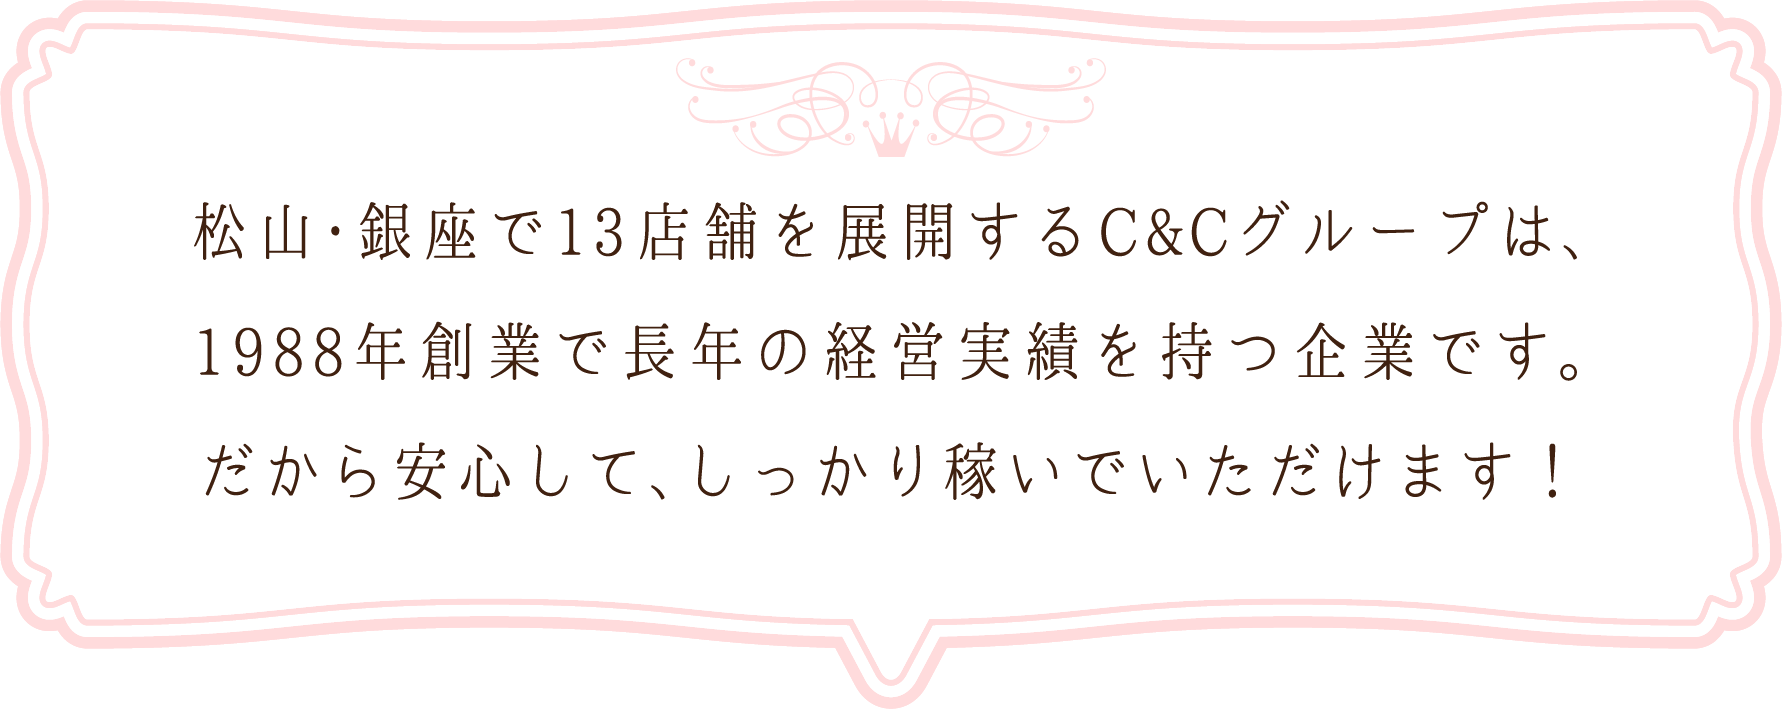 松山・銀座で13店舗を展開するC&Cグループは、1988年創業で長年の経営実績を持つ企業です。だから安心して、しっかり稼いでいただけます！